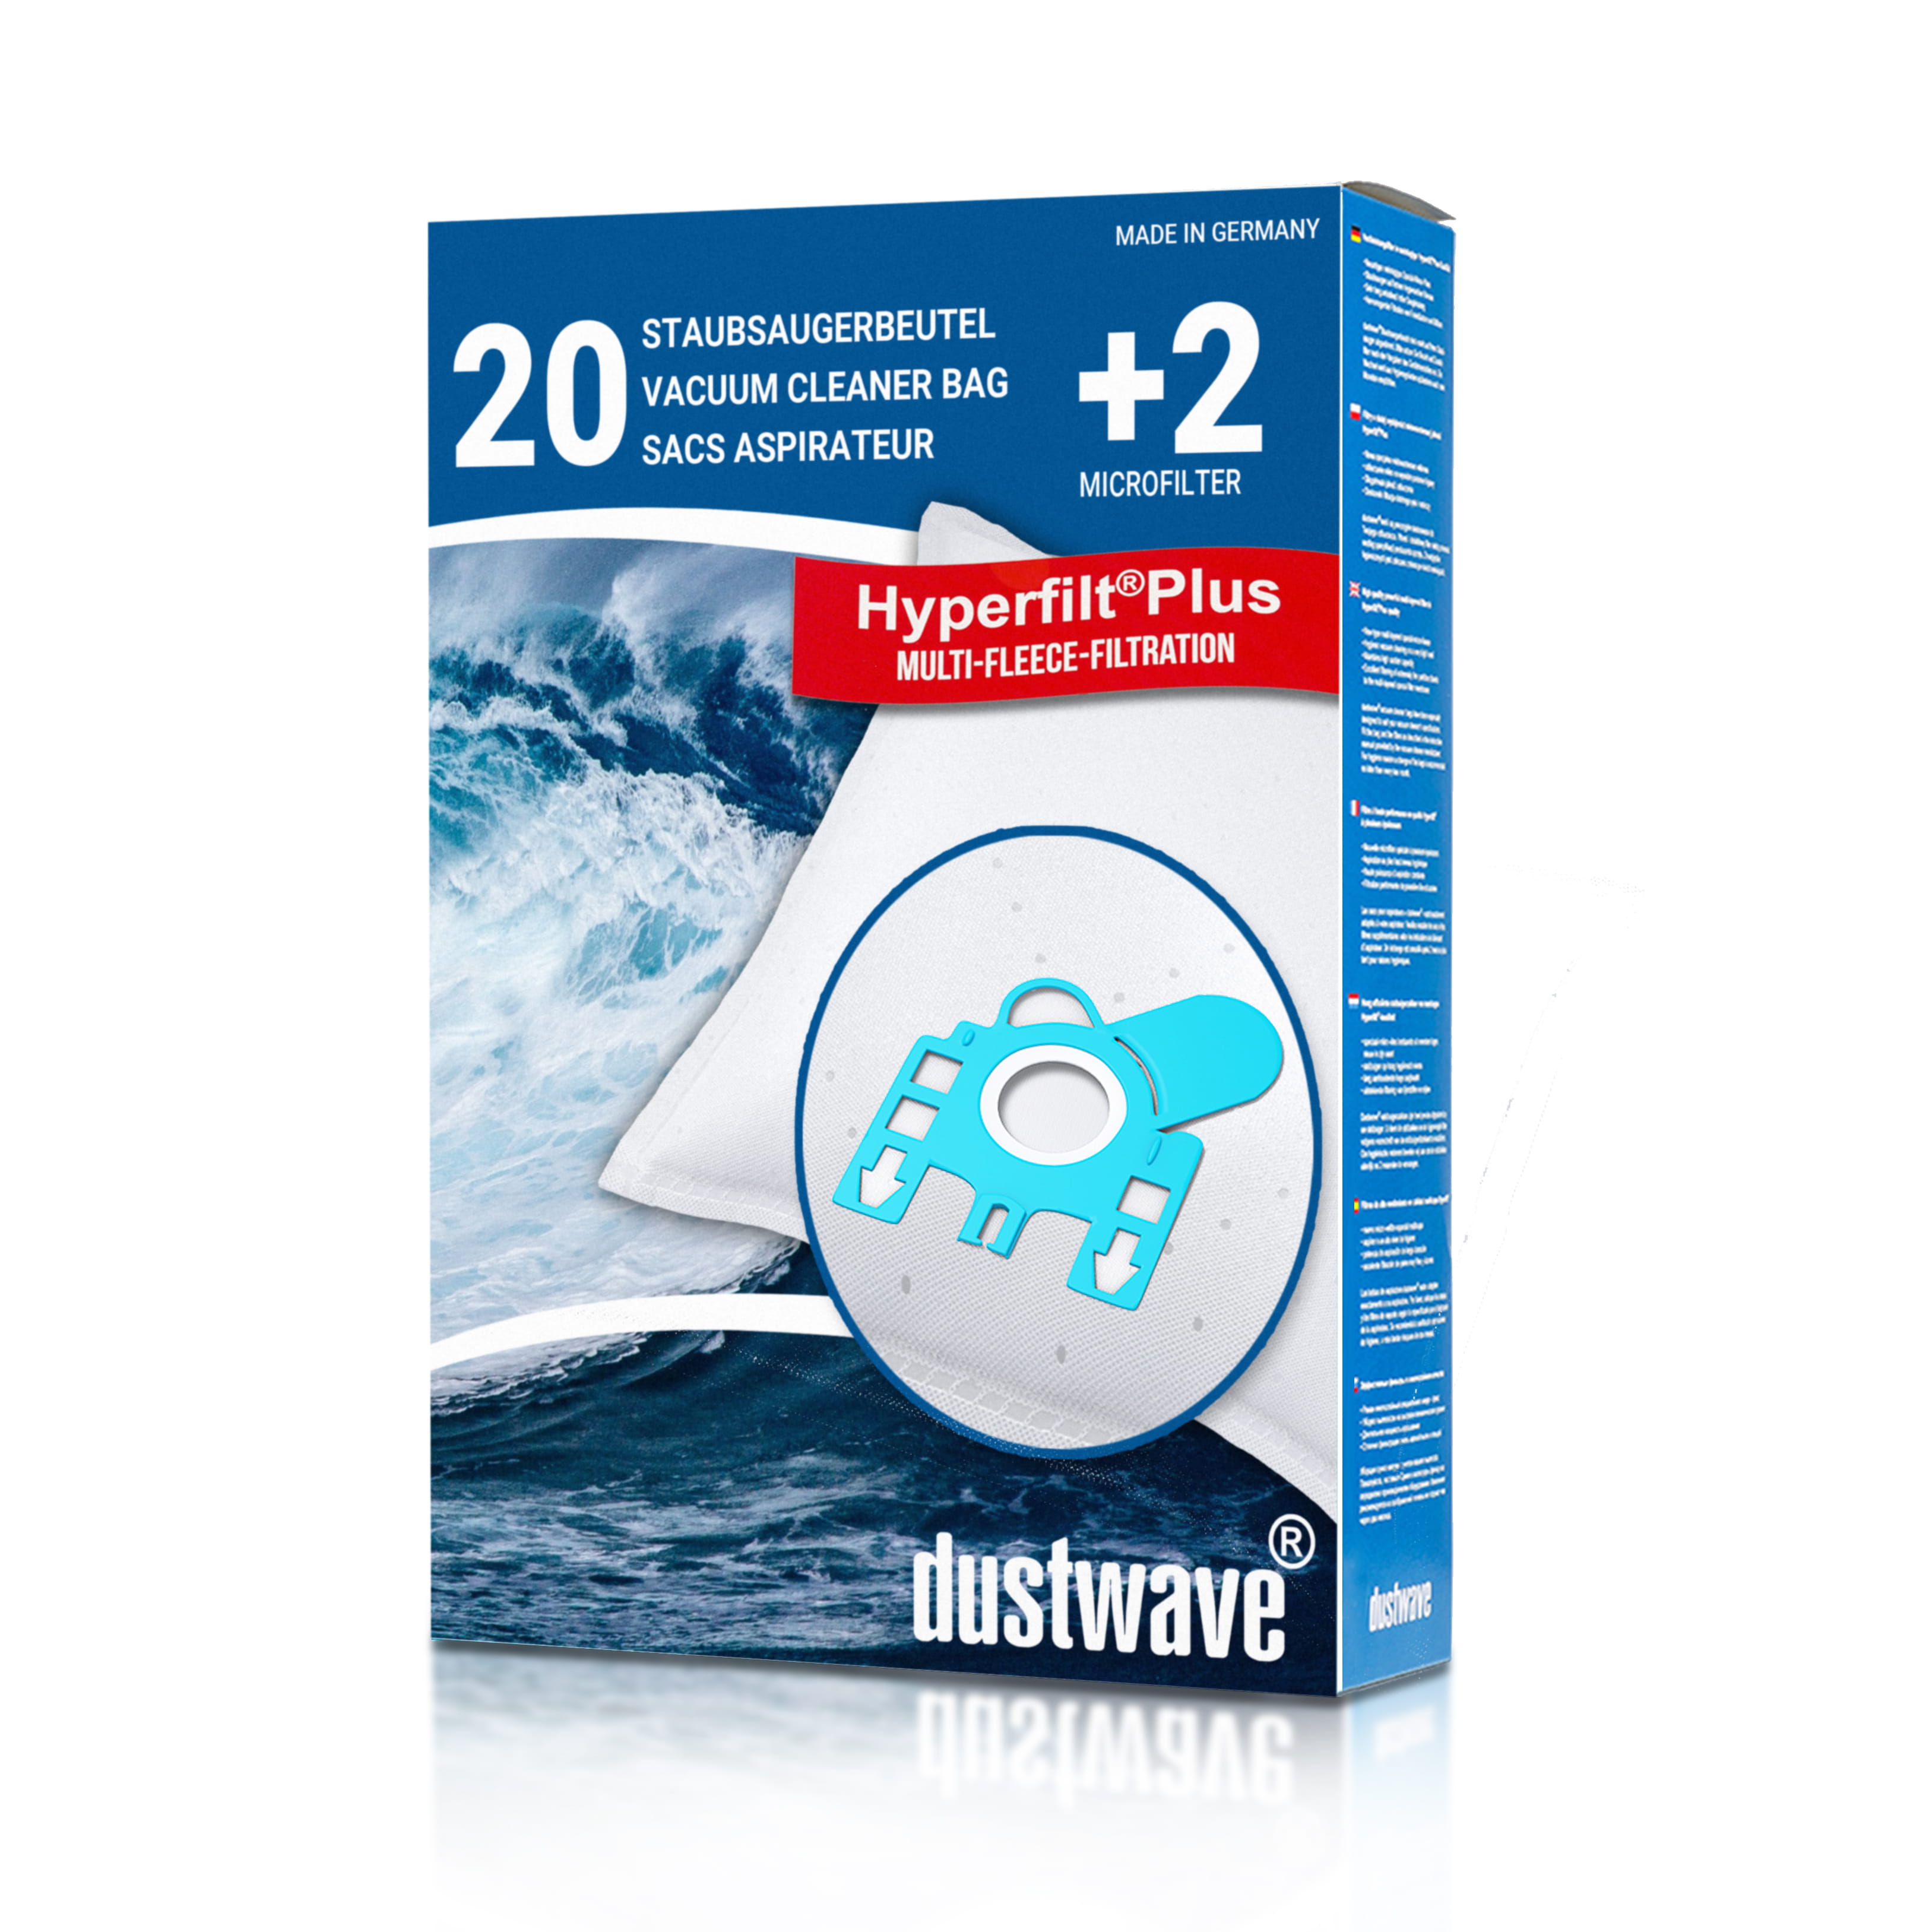 Dustwave® 20 Staubsaugerbeutel für Hoover TC2665 / TRTC2665 - hocheffizient, mehrlagiges Mikrovlies mit Hygieneverschluss - Made in Germany